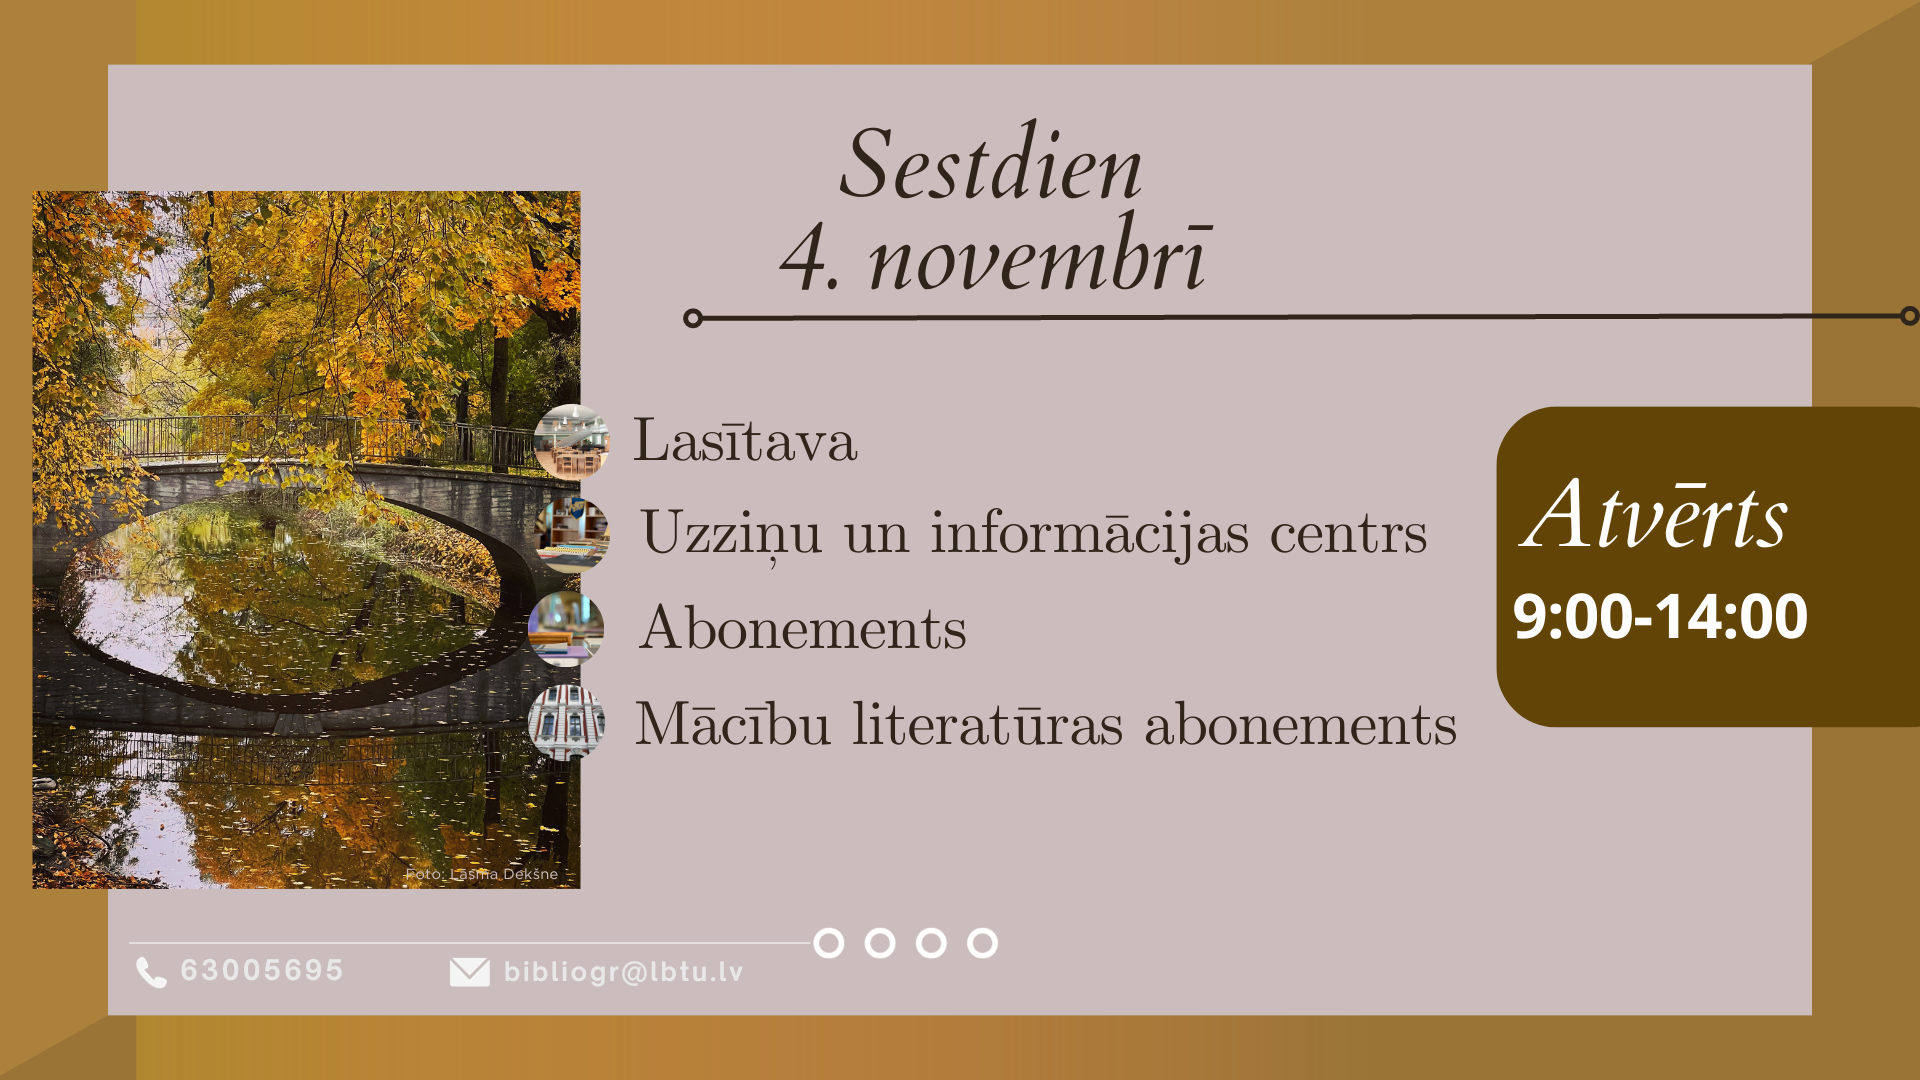 Sestdien, 4. novembrī, LBTU Fundamentālā bibliotēka lasītājiem atvērta no plkst. 9.00 līdz 14.00